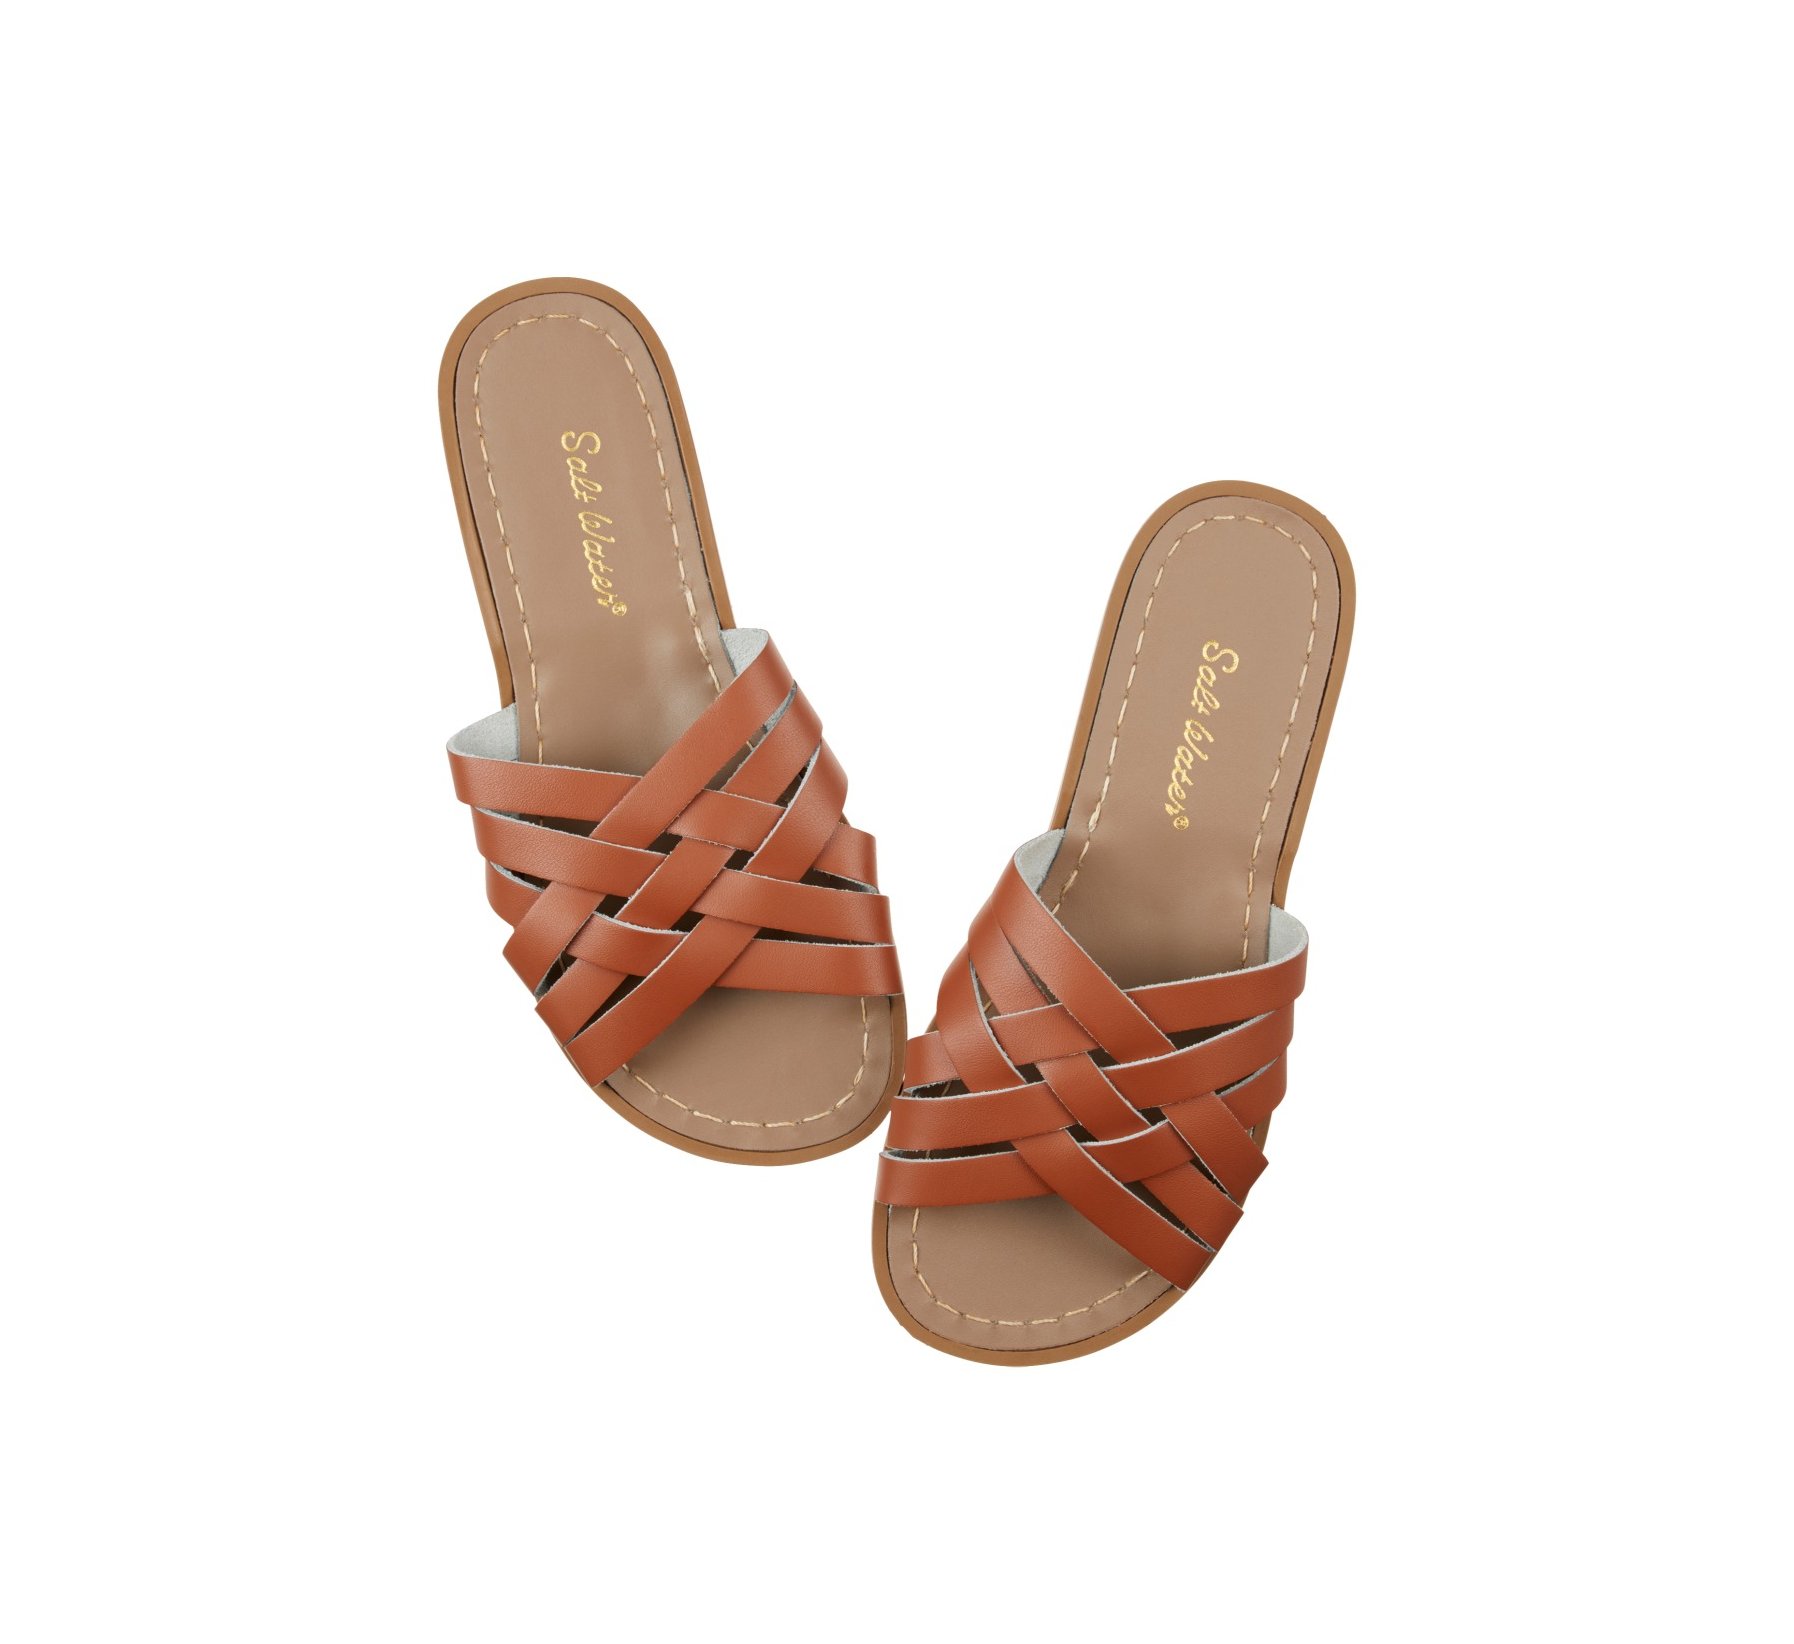 Retro Slide Brun Roux - Salt Water Sandals